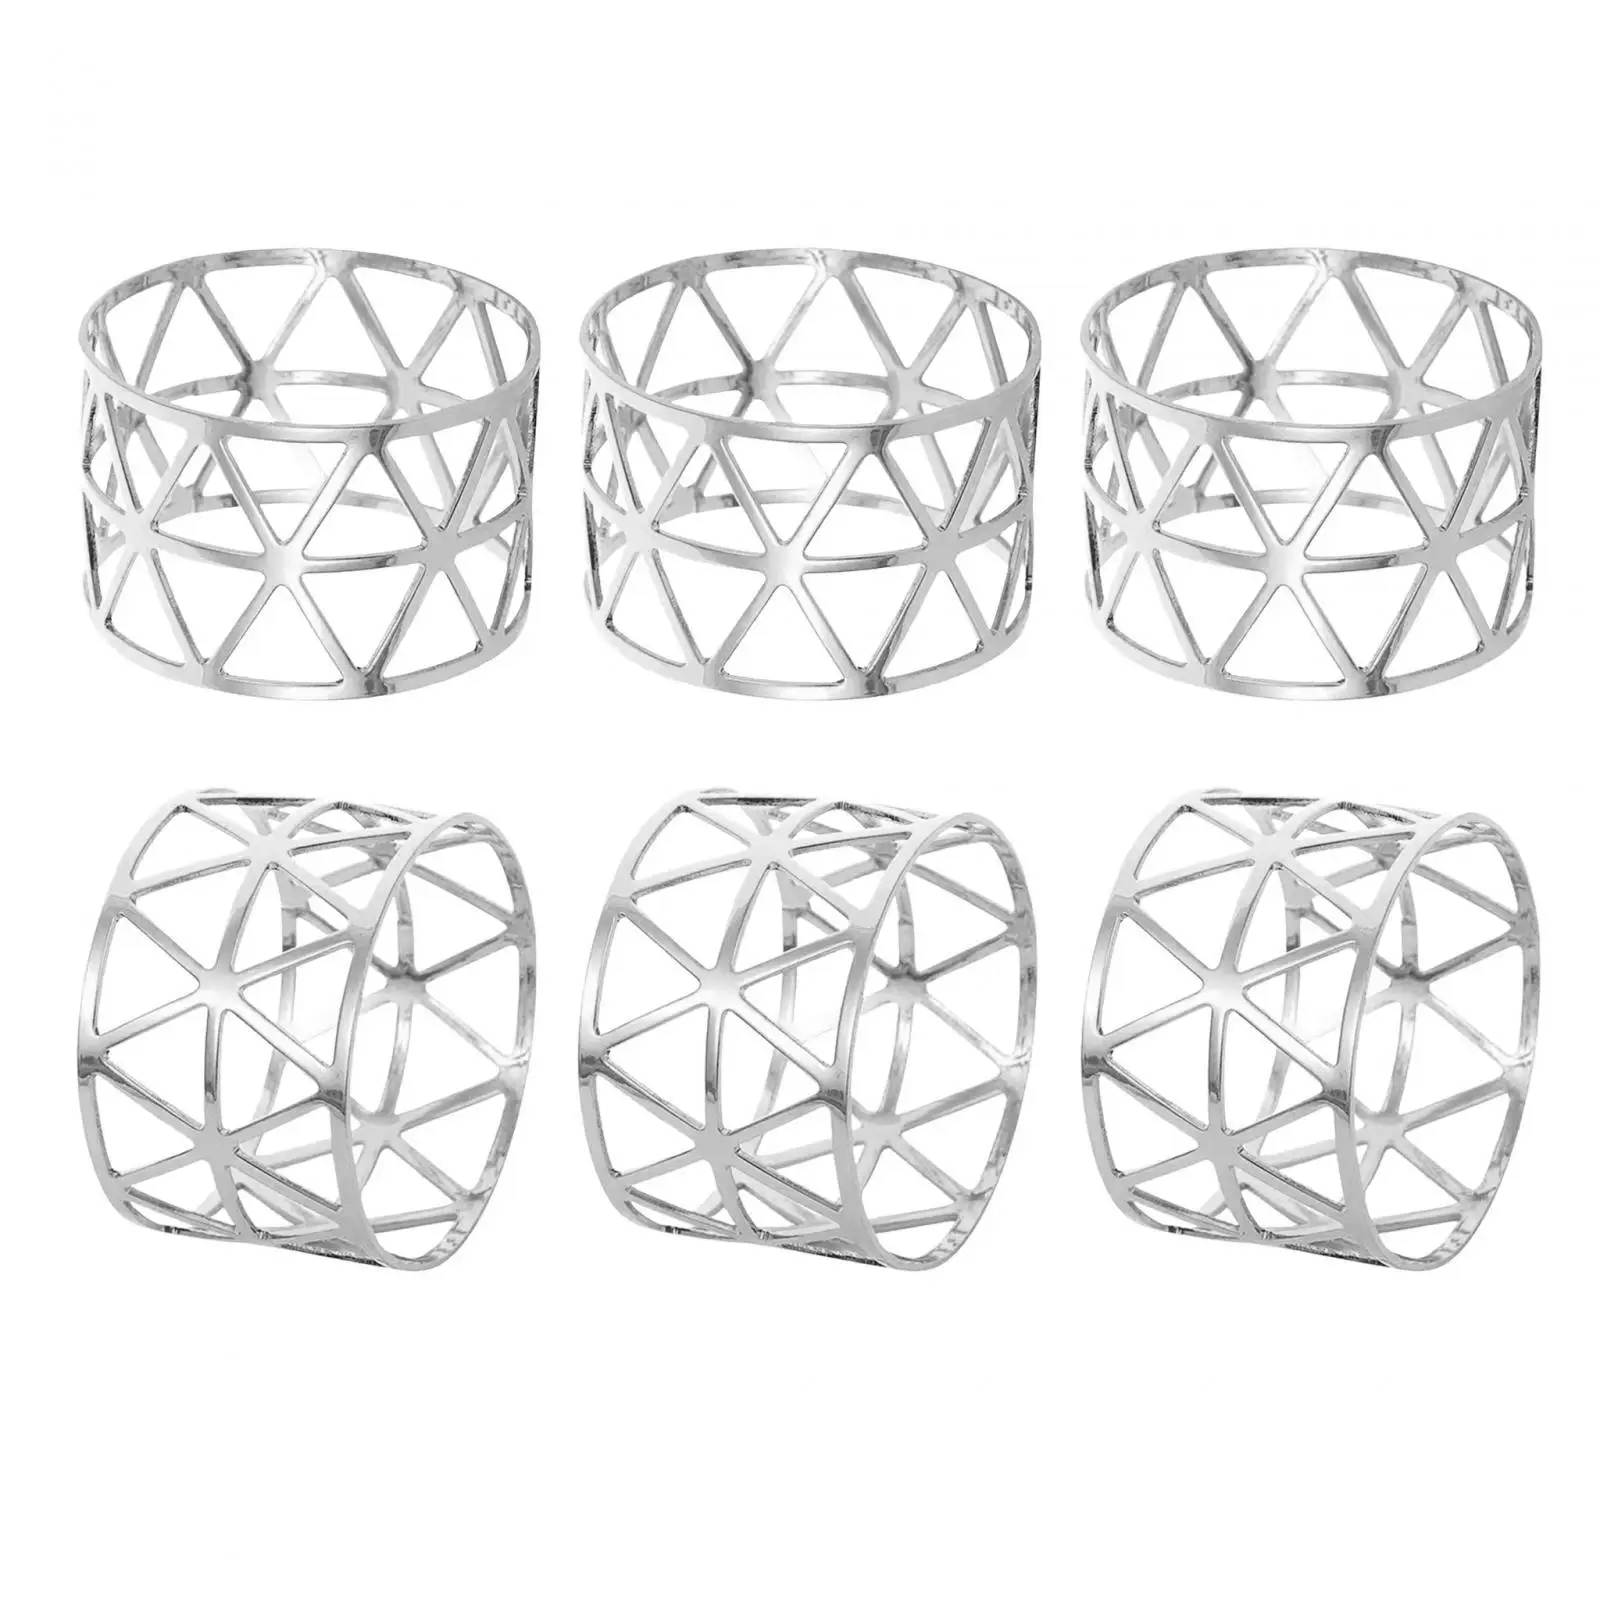 6x Napkin Rings Cloth Napkin Holders Decorative Metal Table Setting Napkin Rings